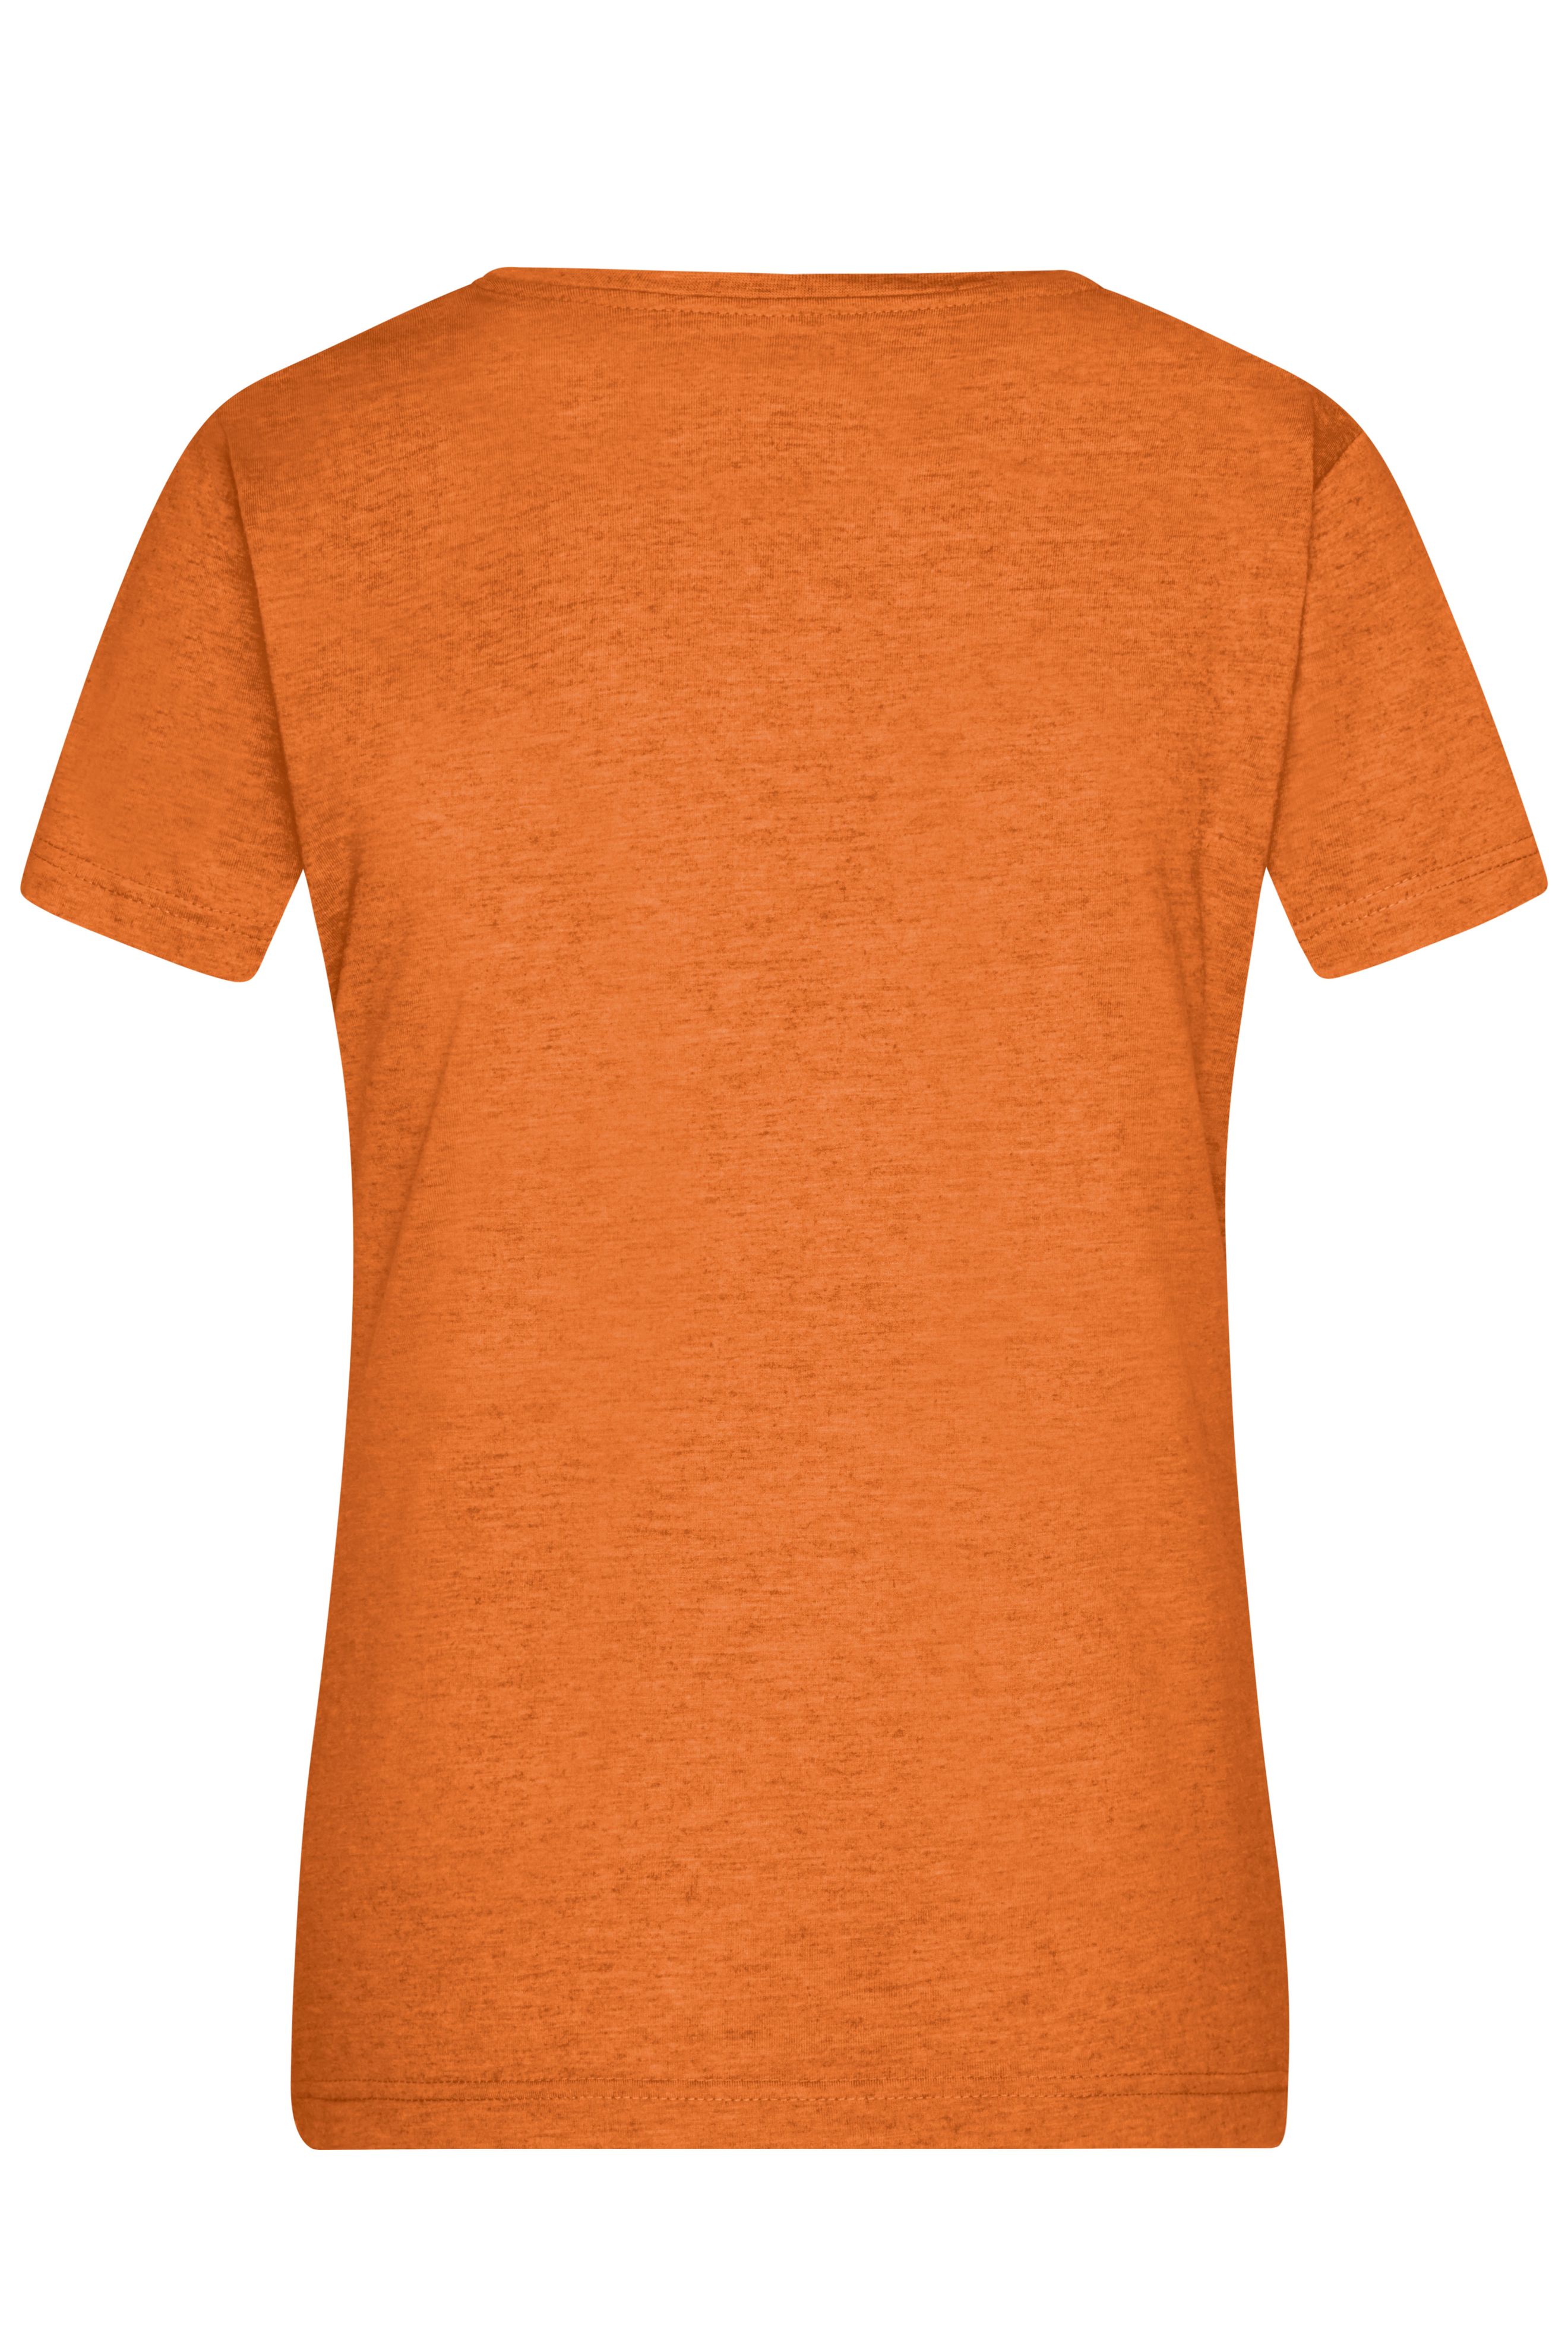 Ladies' Heather T-Shirt JN973 Modisches T-Shirt mit V-Ausschnitt